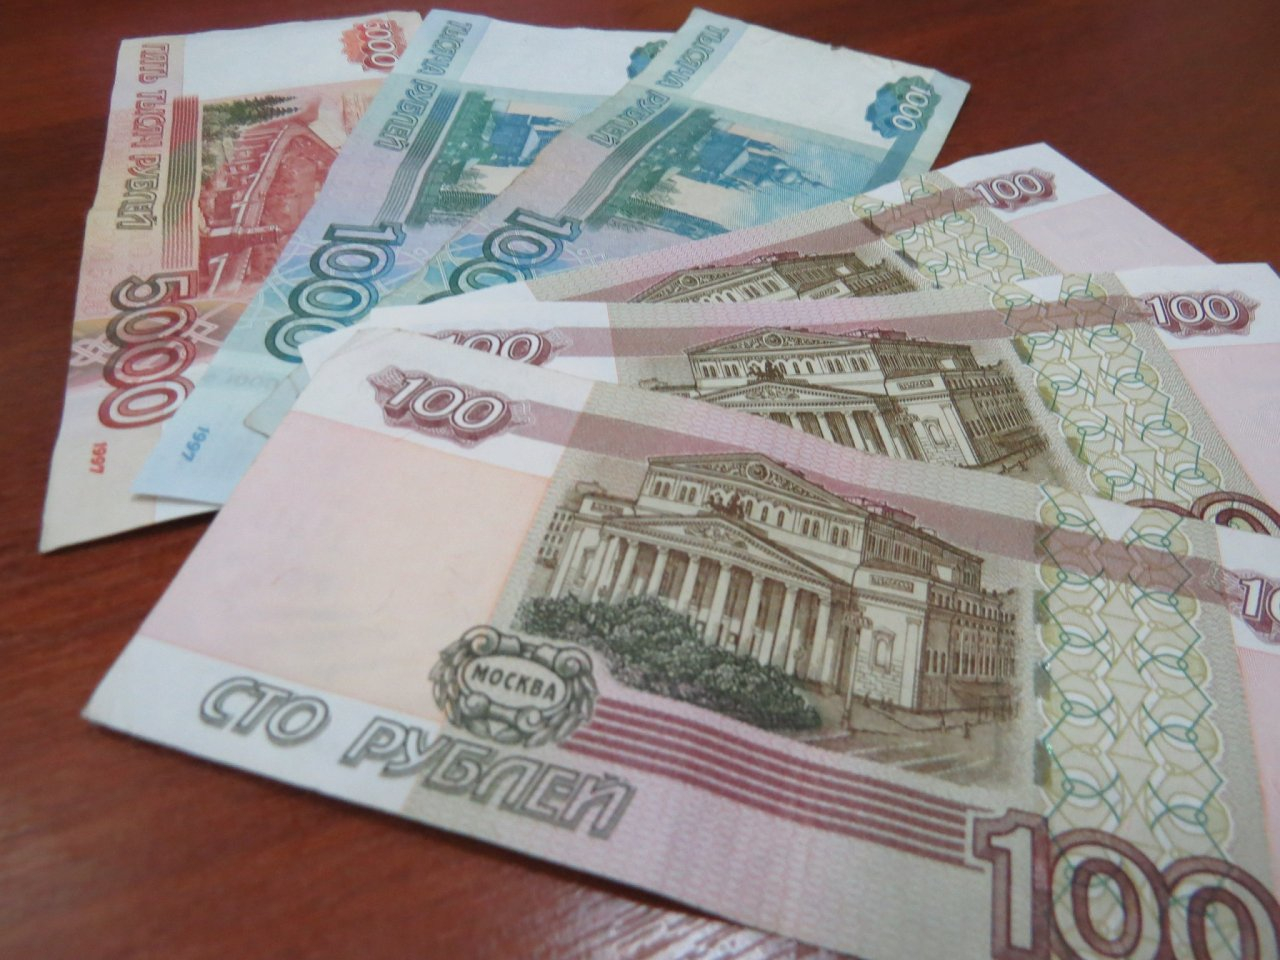  Житель Саранска заплатил более 13 тысяч рублей за несуществующие шины с дисками 